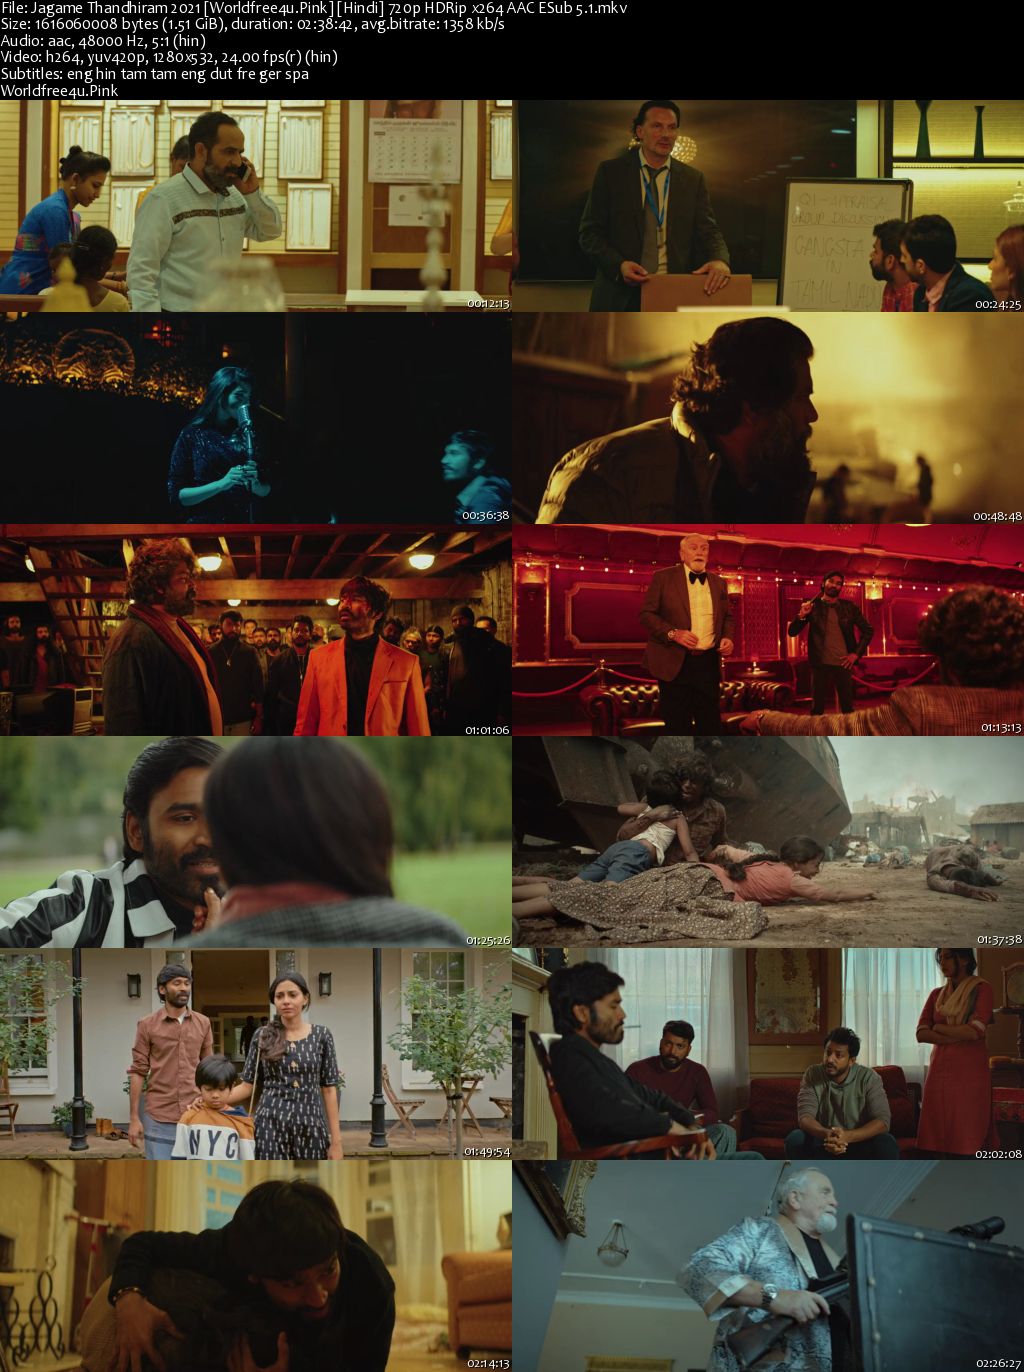 Jagame Thandhiram 2021 Hindi Movie Download || HDRip 720p